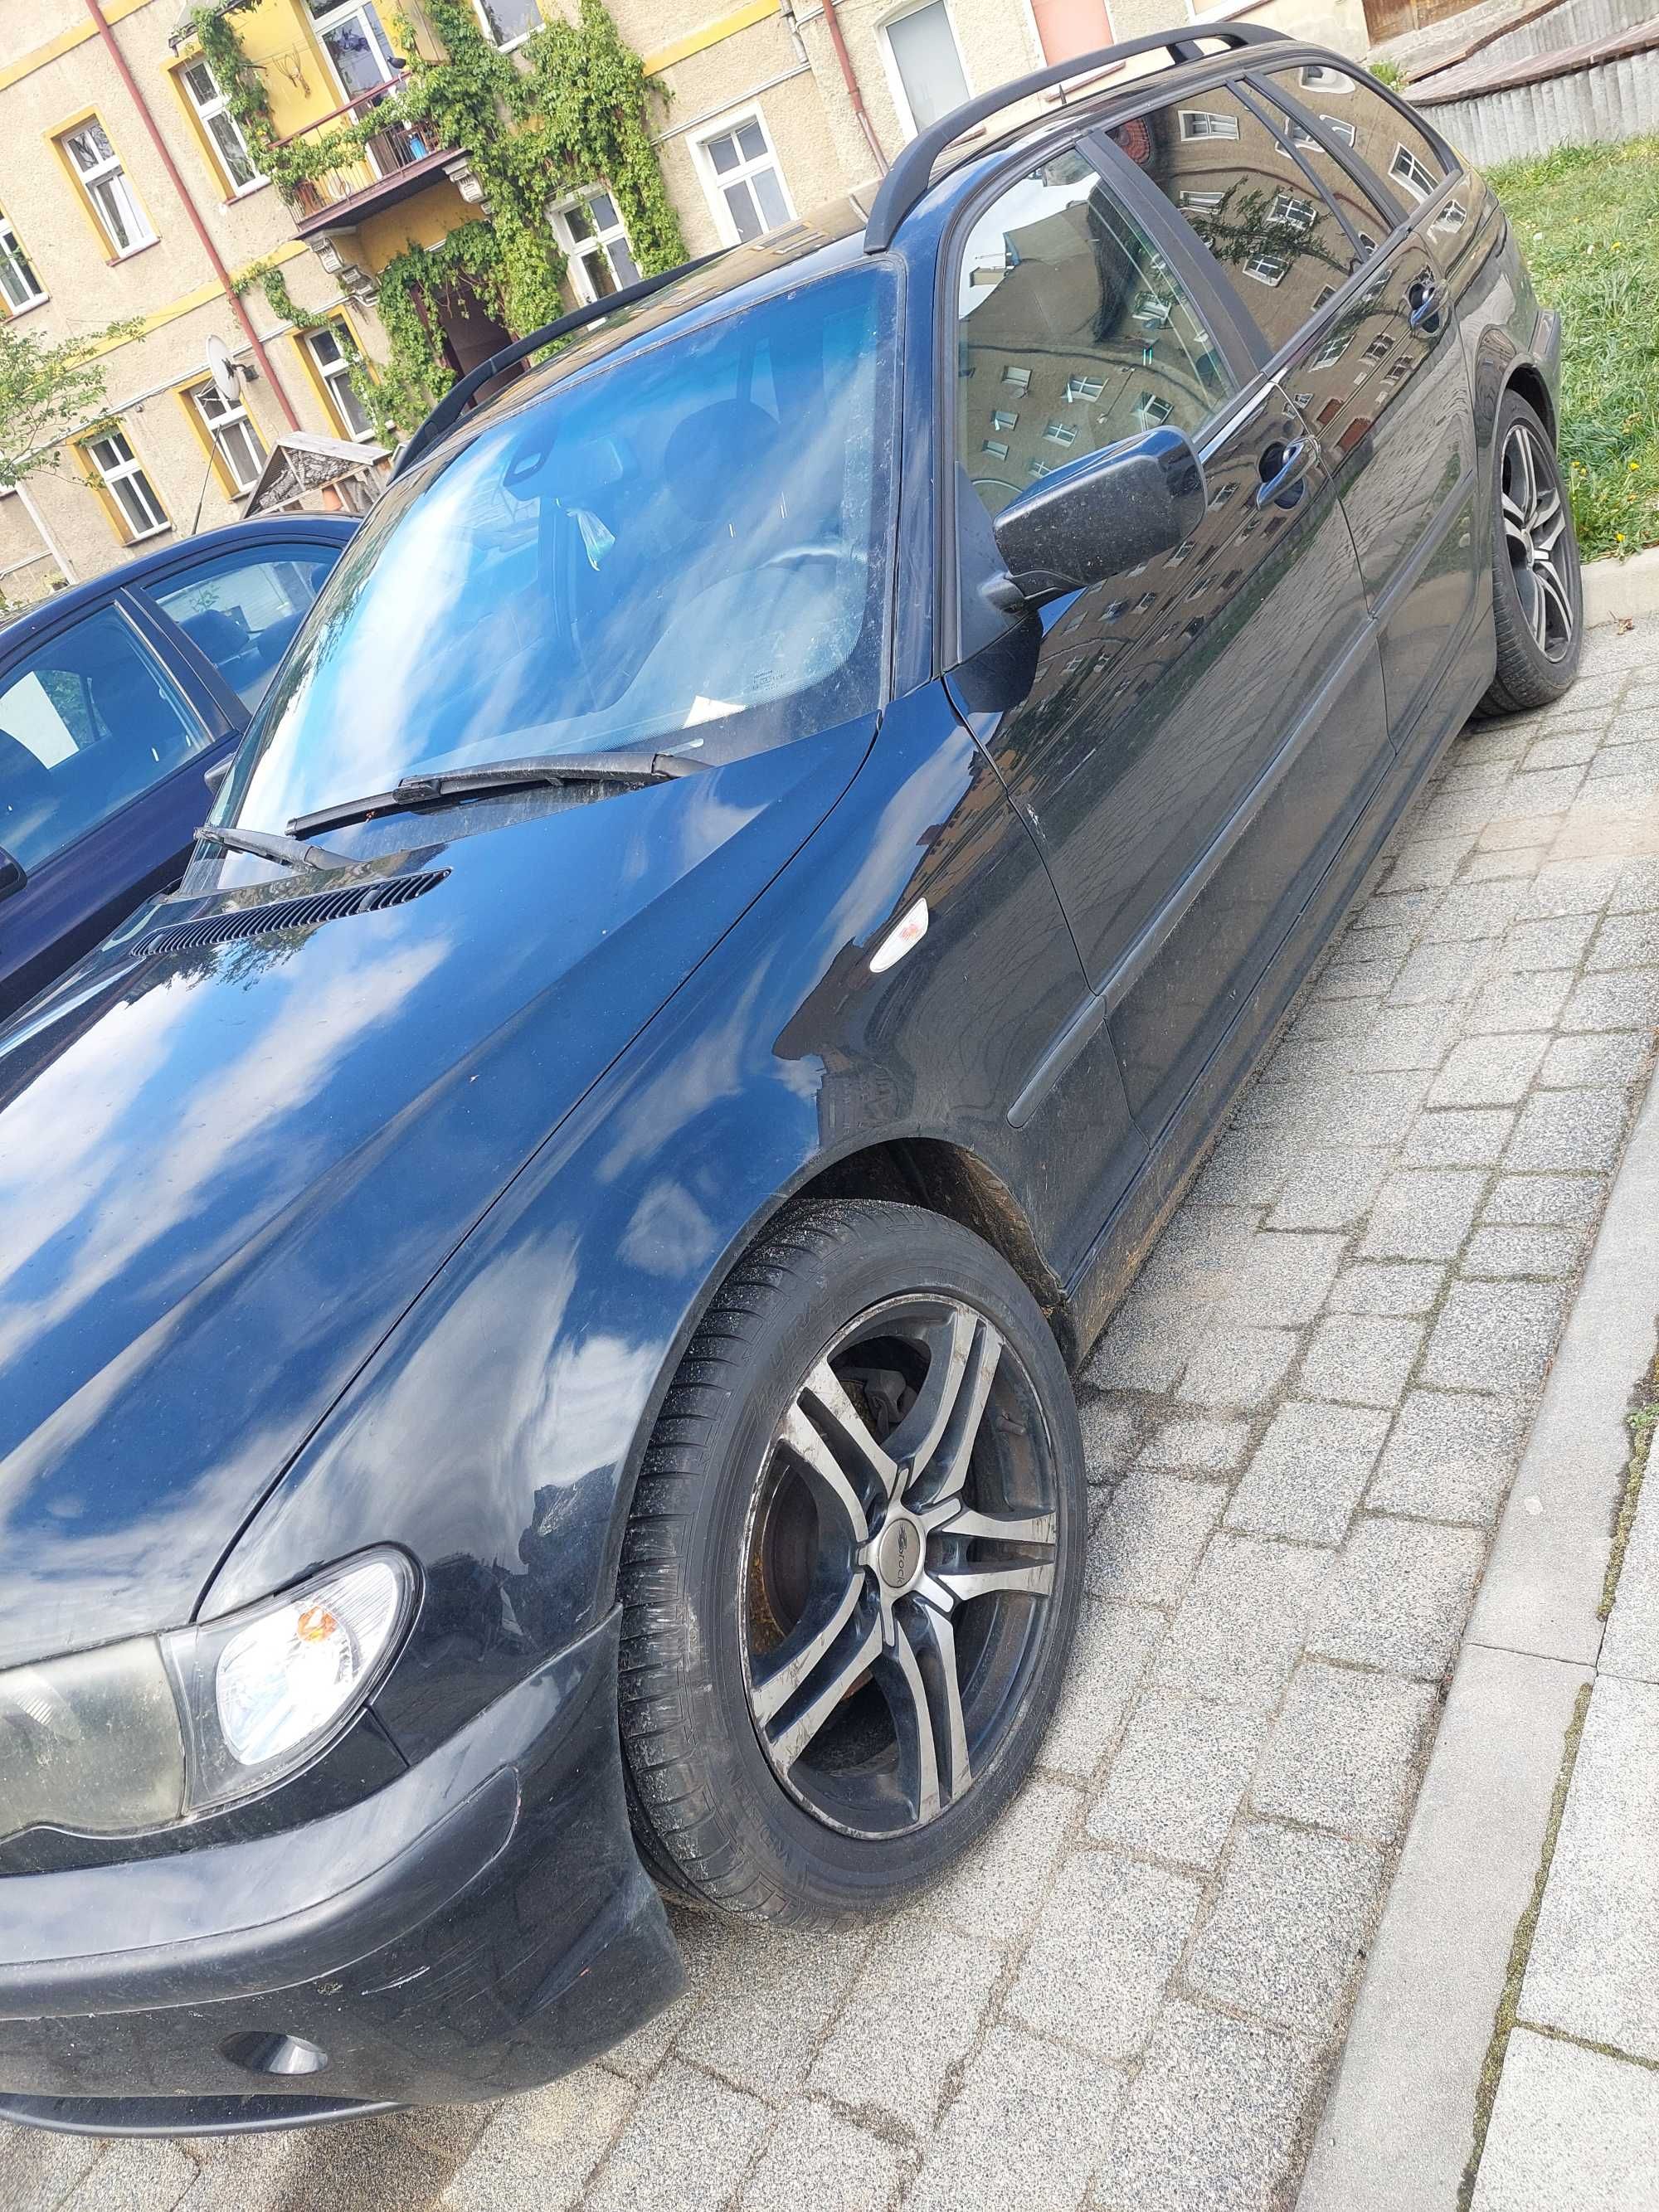 BMW 320d - uszkodzony